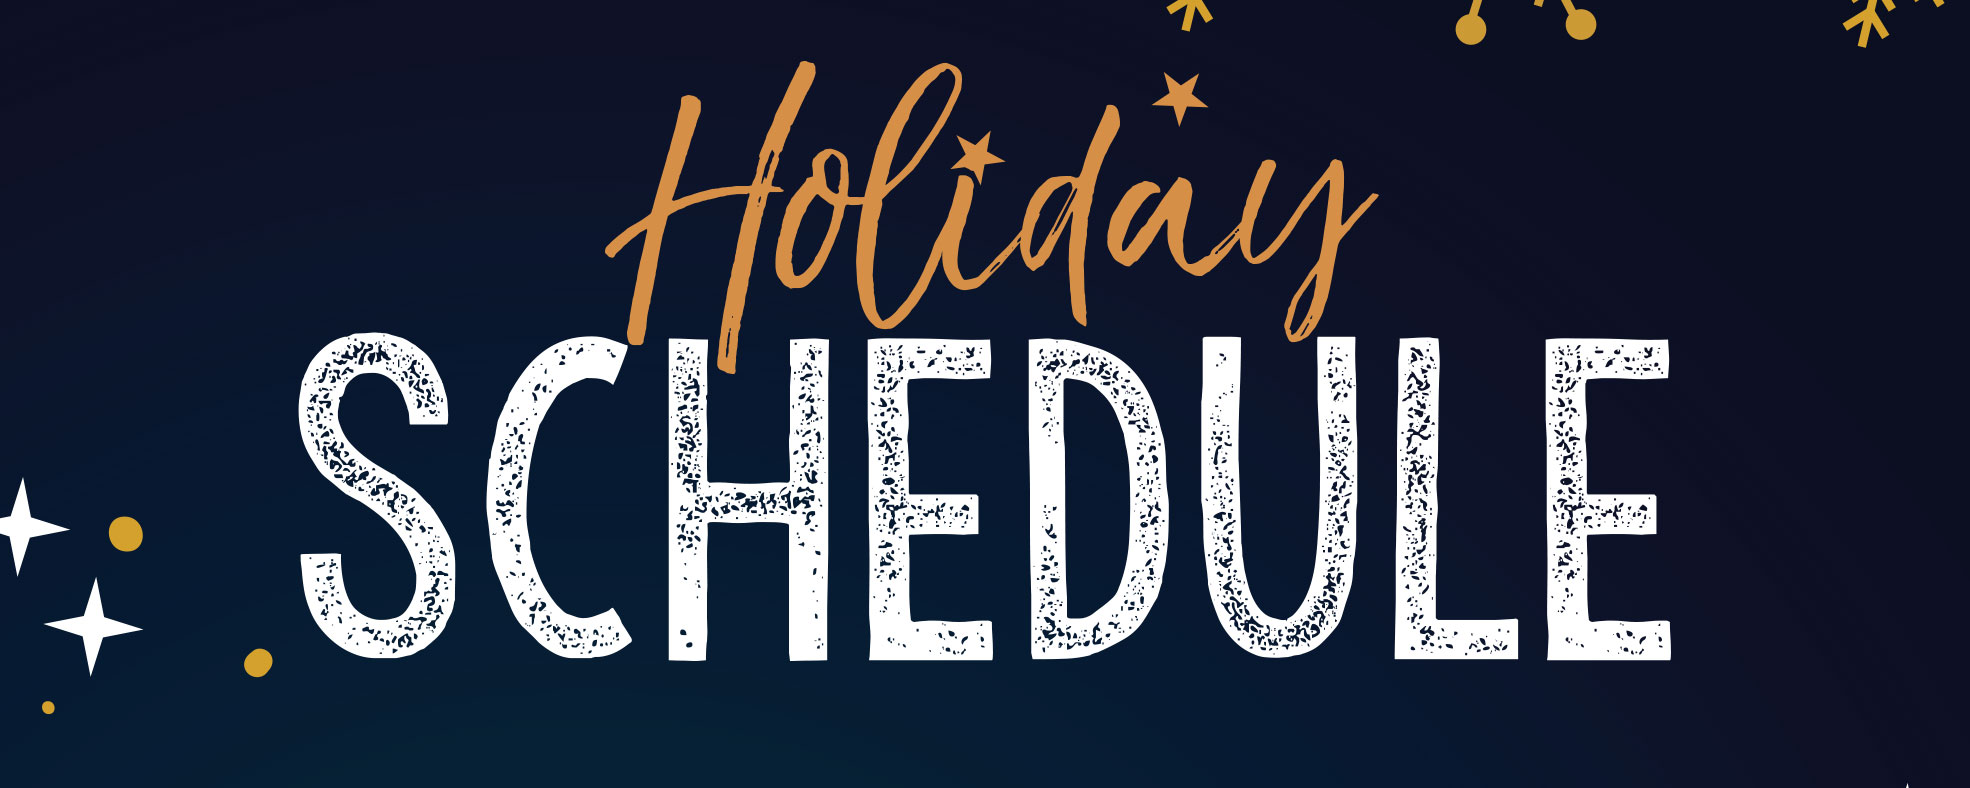 Holiday-Schedule-Dec-25.jpg